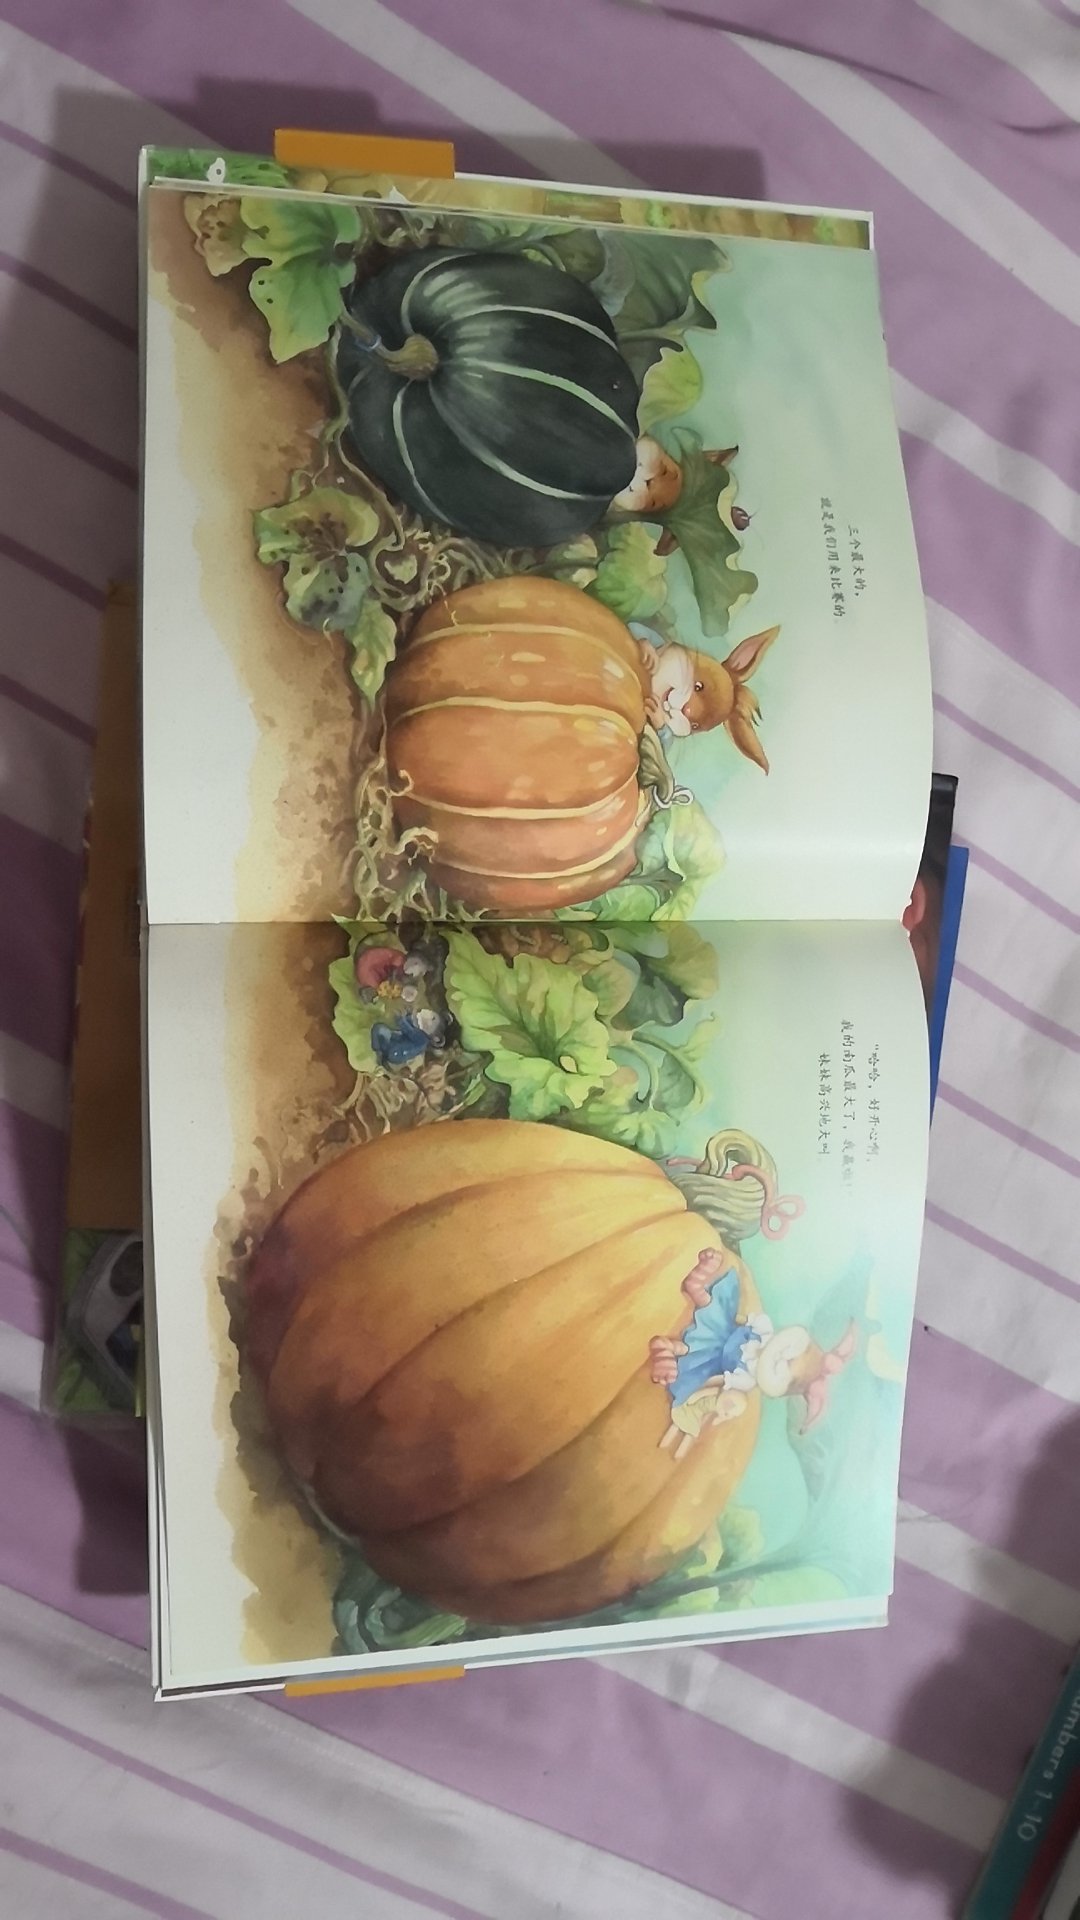 妹妹的大南瓜   是一本非常有爱的绘本，特别适合家里有两个孩子的家庭哦。真心喜欢书中那种兄妹之情。而且画面十分唯美哦！建议阅读！